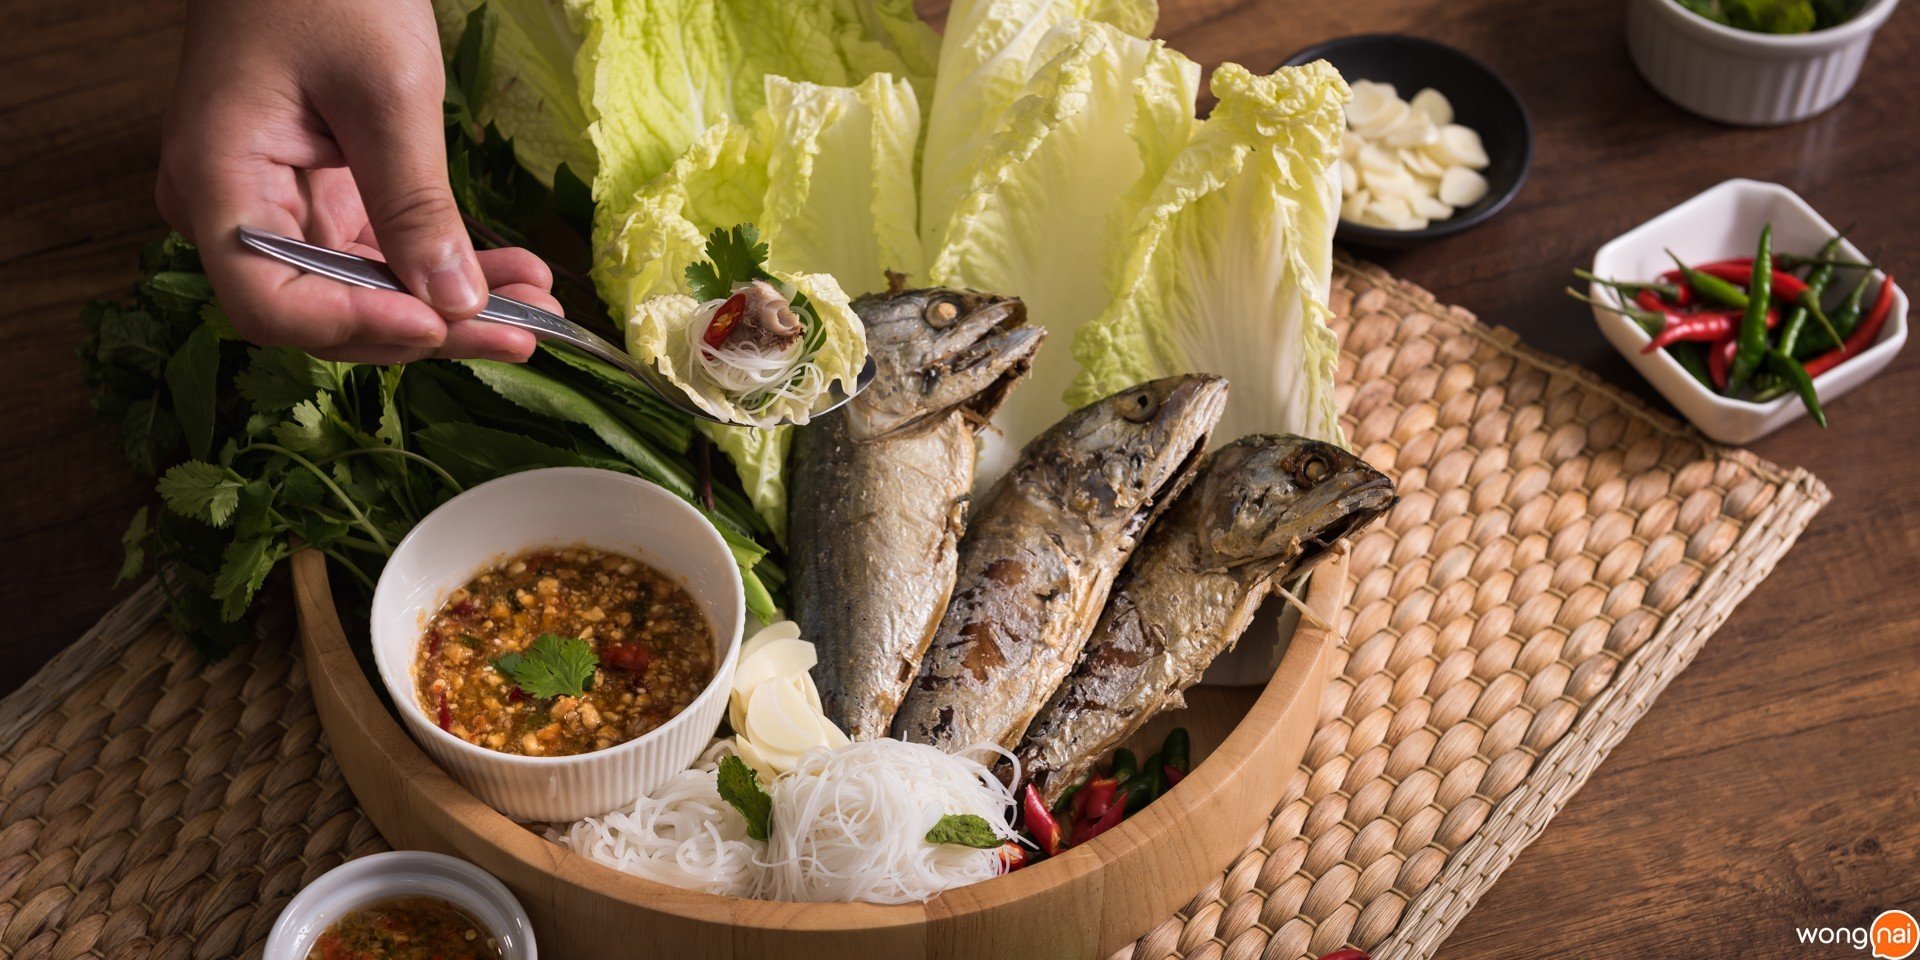 วิธีทำ “เมี่ยงปลาทู” เมนูอาหารเพื่อสุขภาพ พร้อมสูตรน้ำจิ้มรสเด็ด!